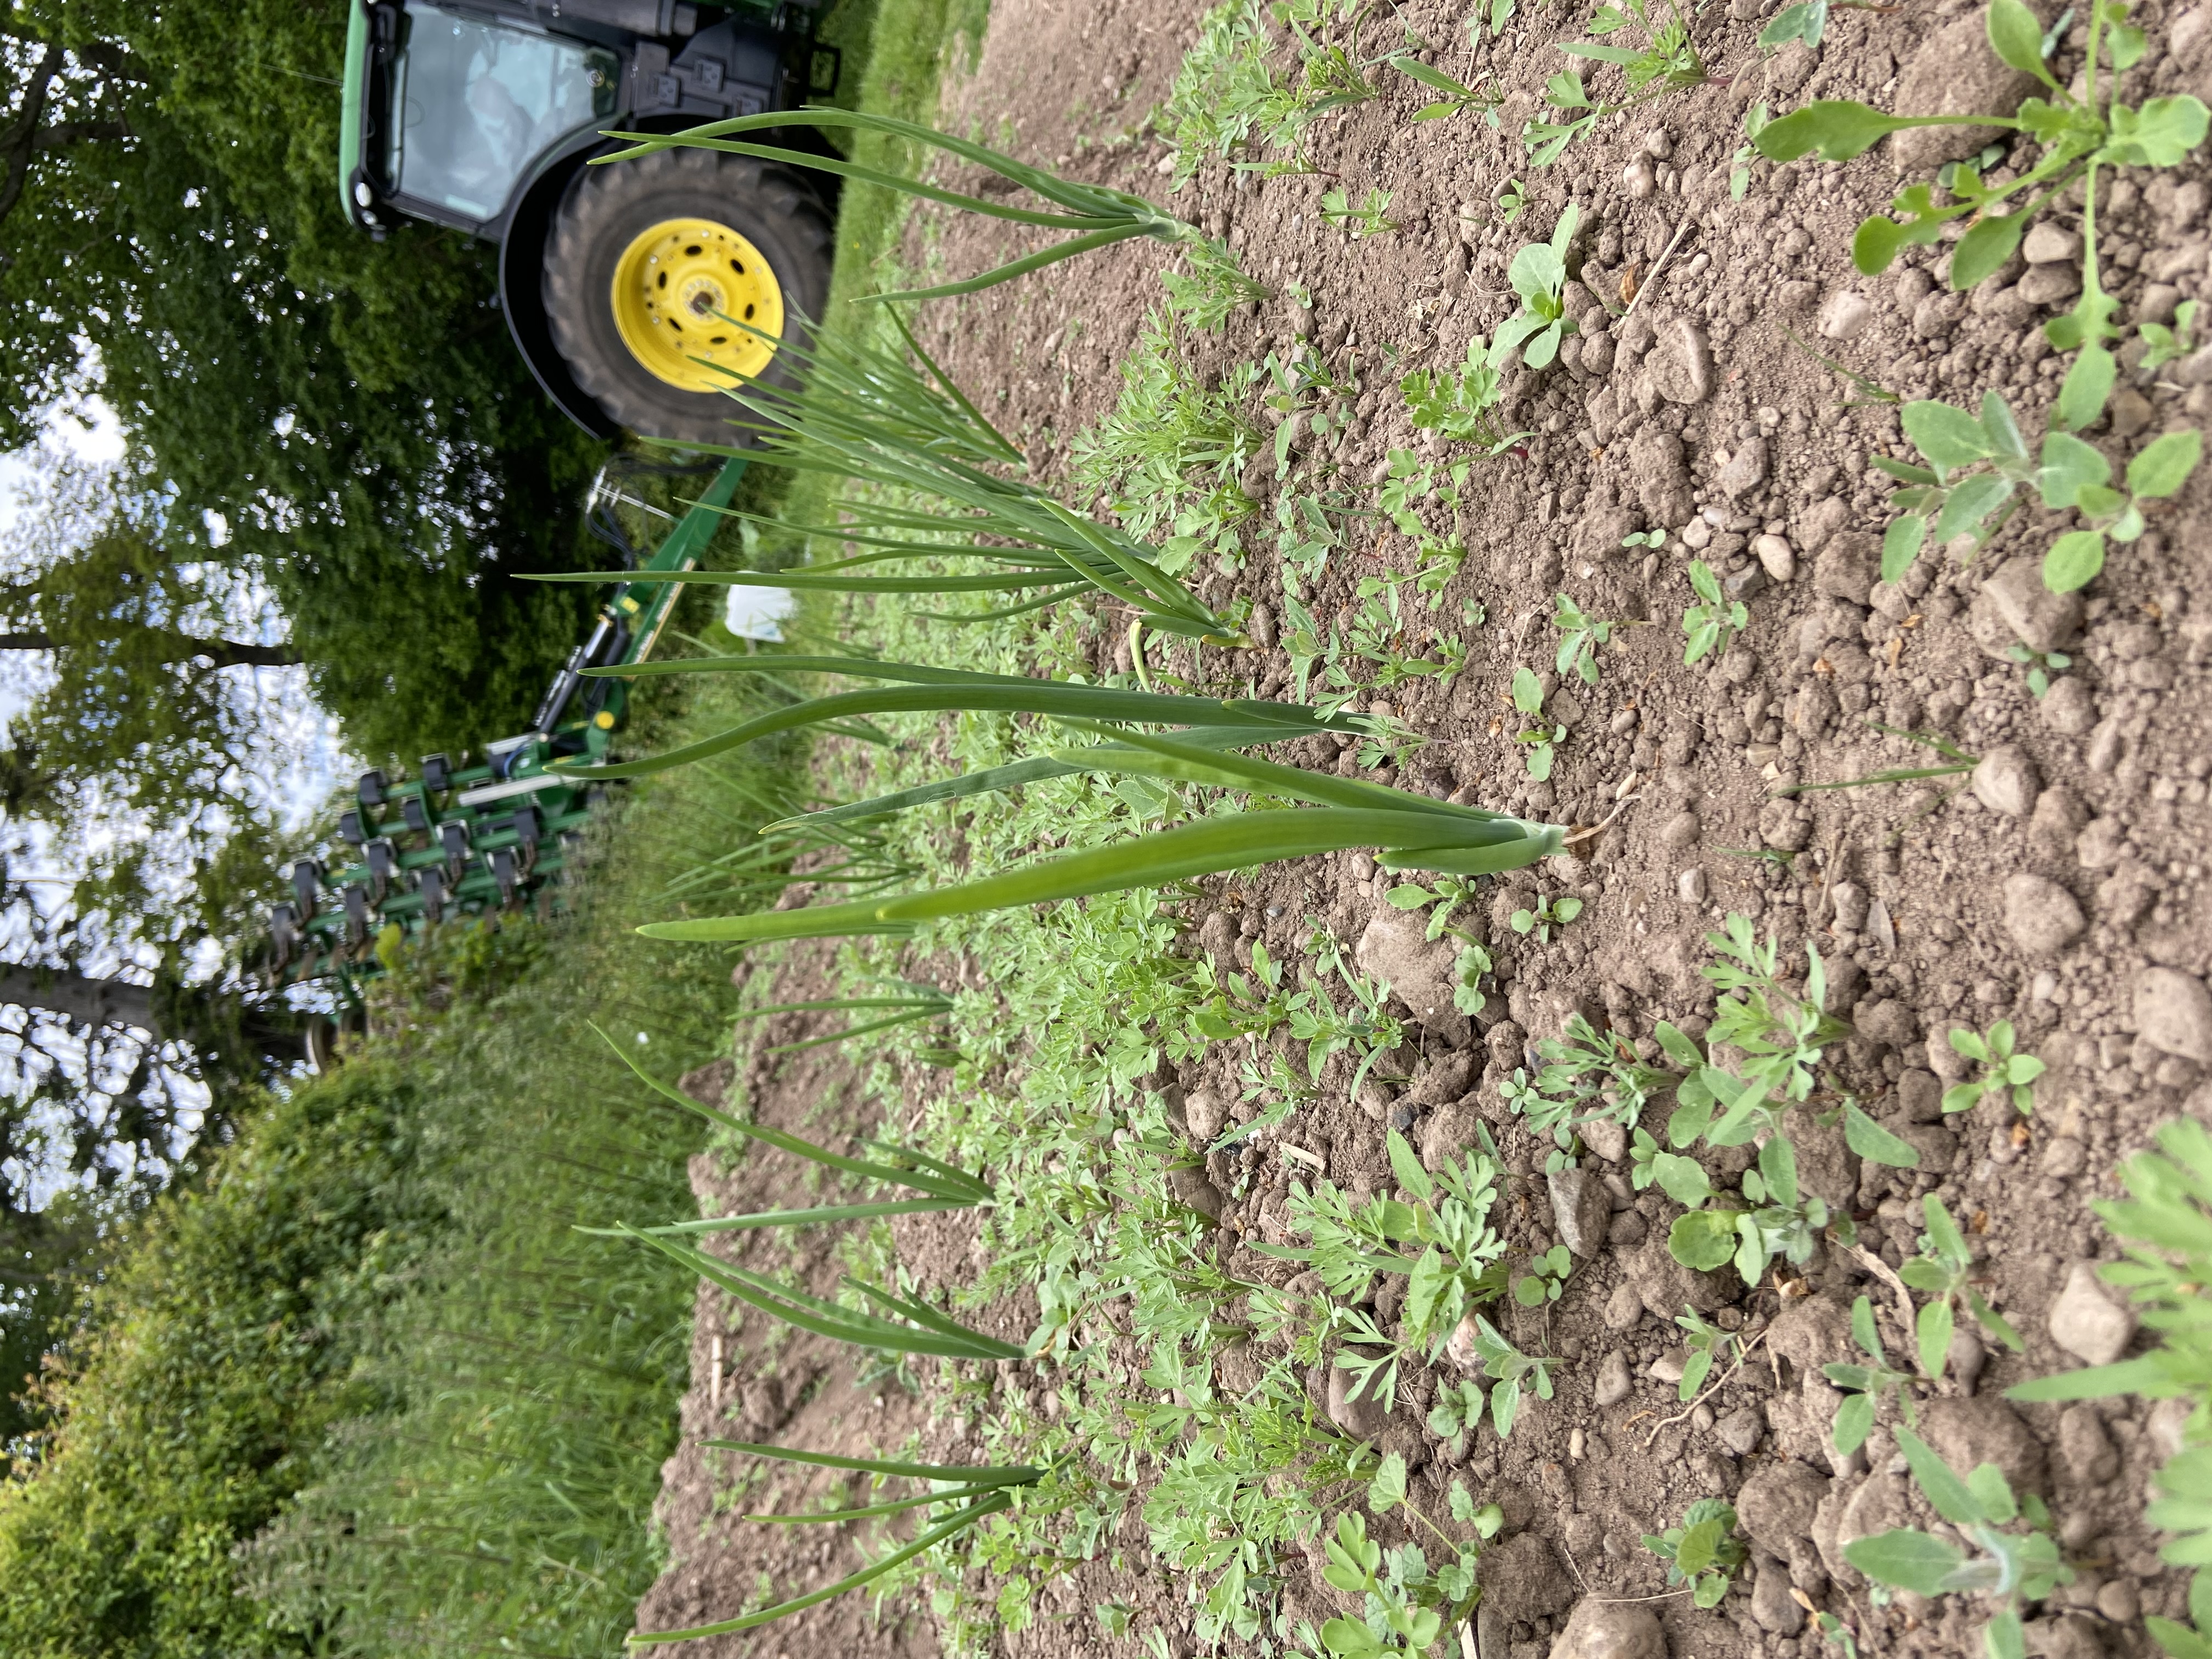 On the veg growing again!